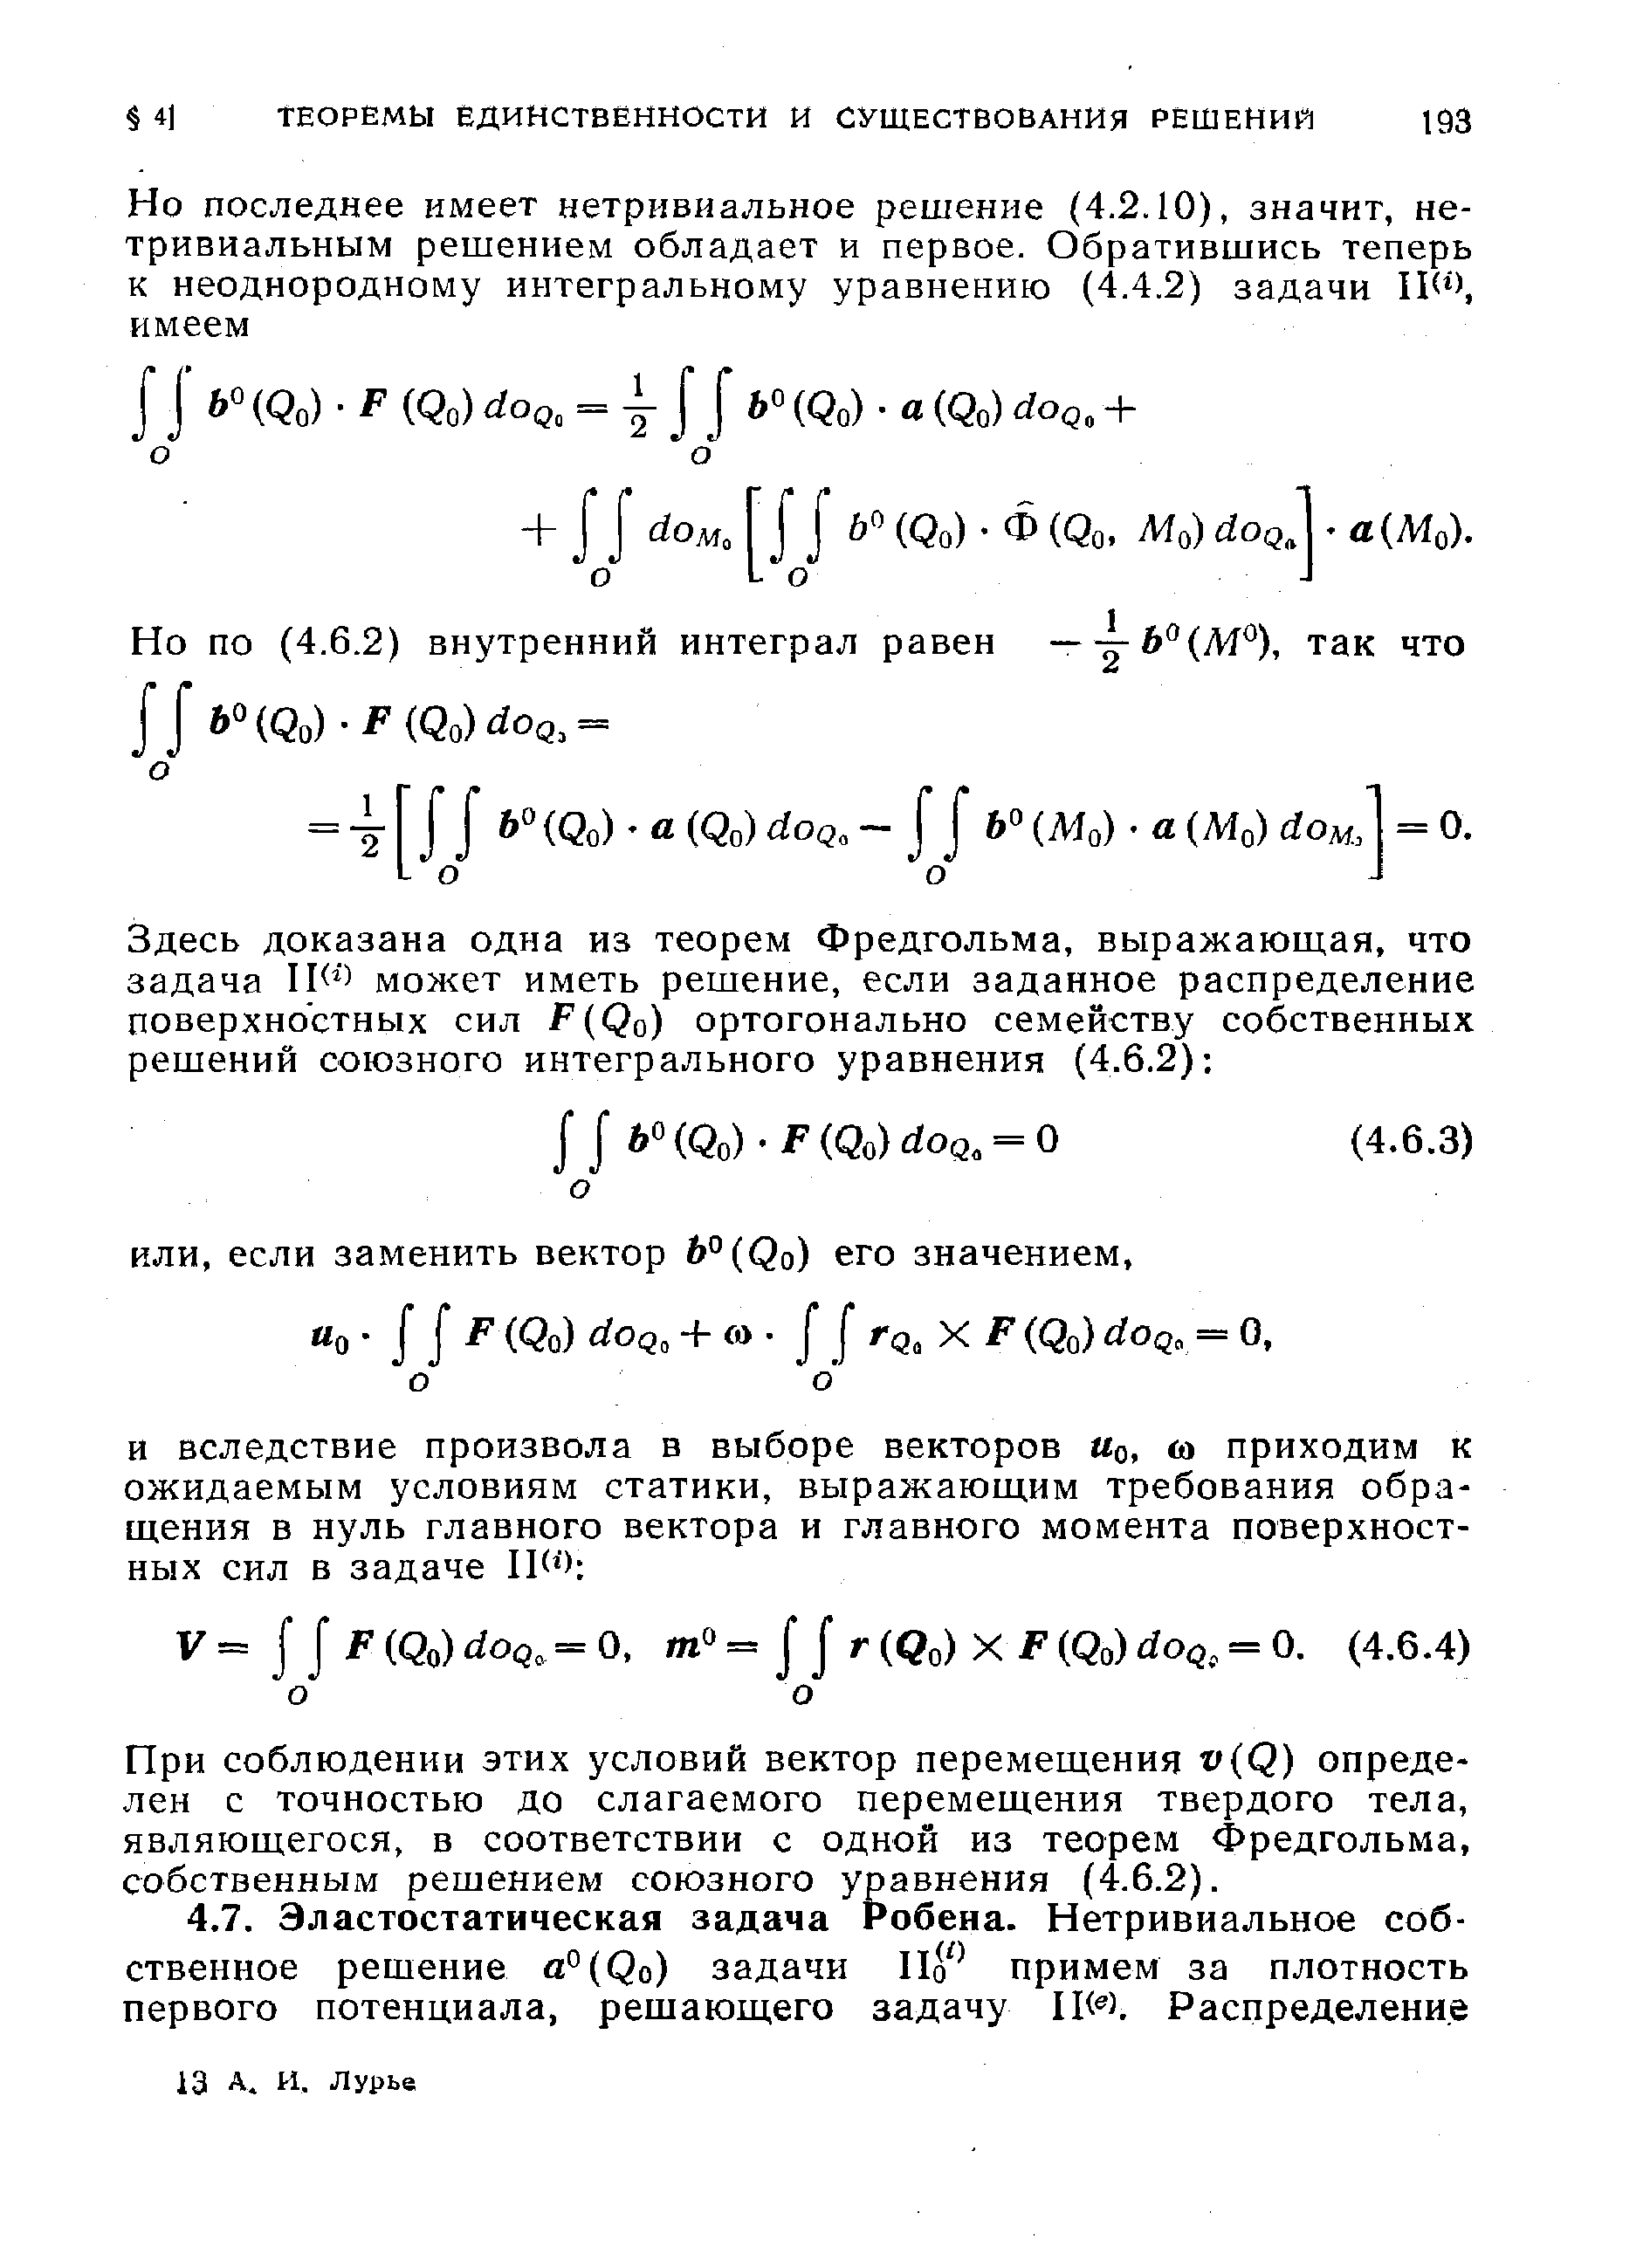 При соблюдении этих условий вектор перемещения v(Q) определен с точностью до слагаемого перемещения твердого тела, являющегося, в соответствии с одной из теорем Фредгольма, собственным решением союзного уравнения (4.6.2).
